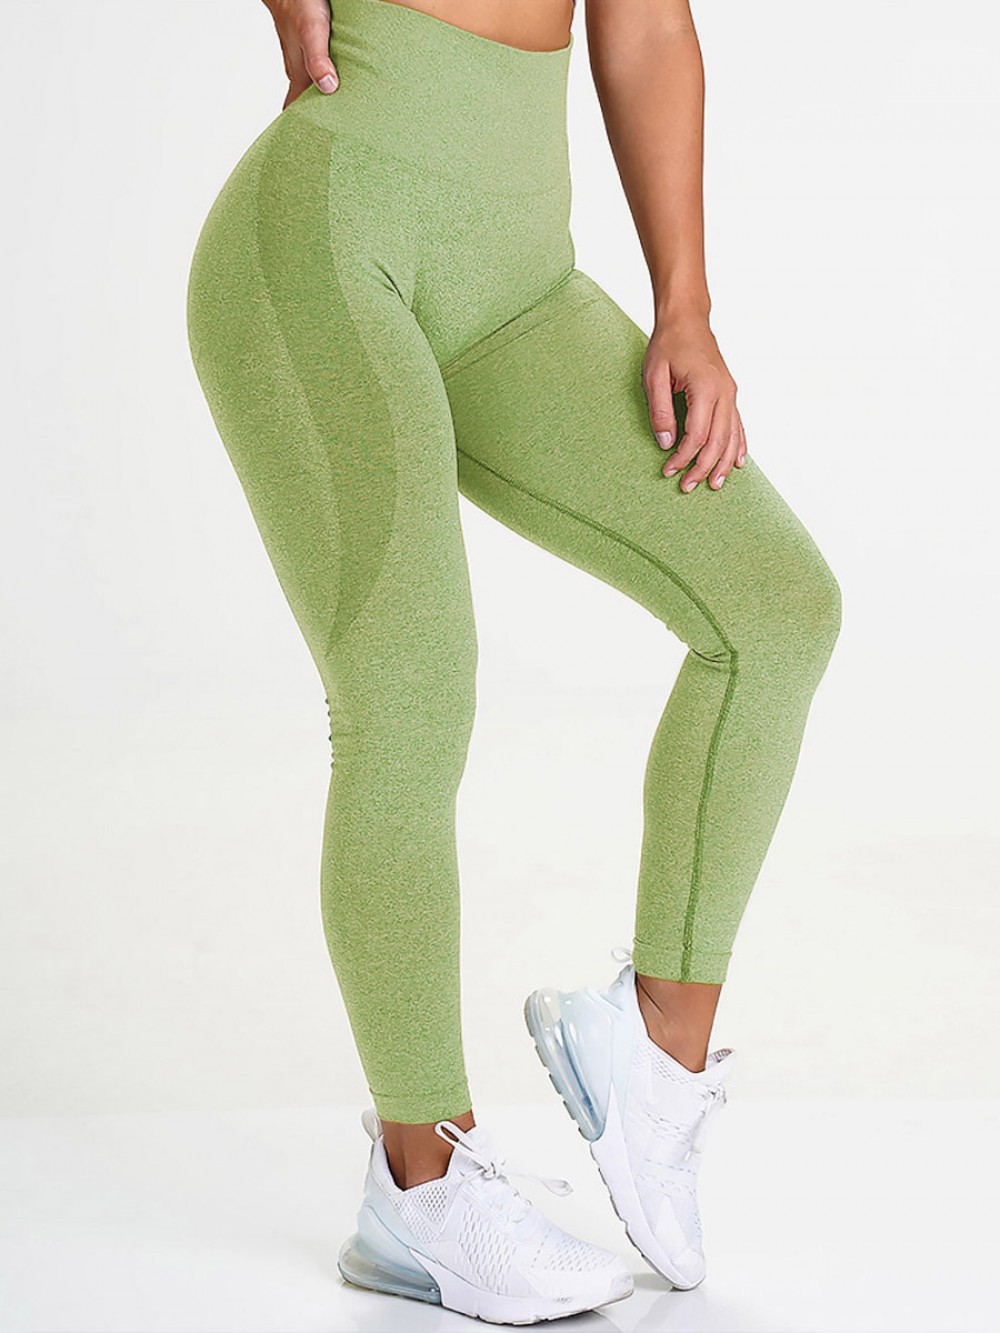 Charming Green Butt Enhance Full Length Yoga Legging For Streetshots